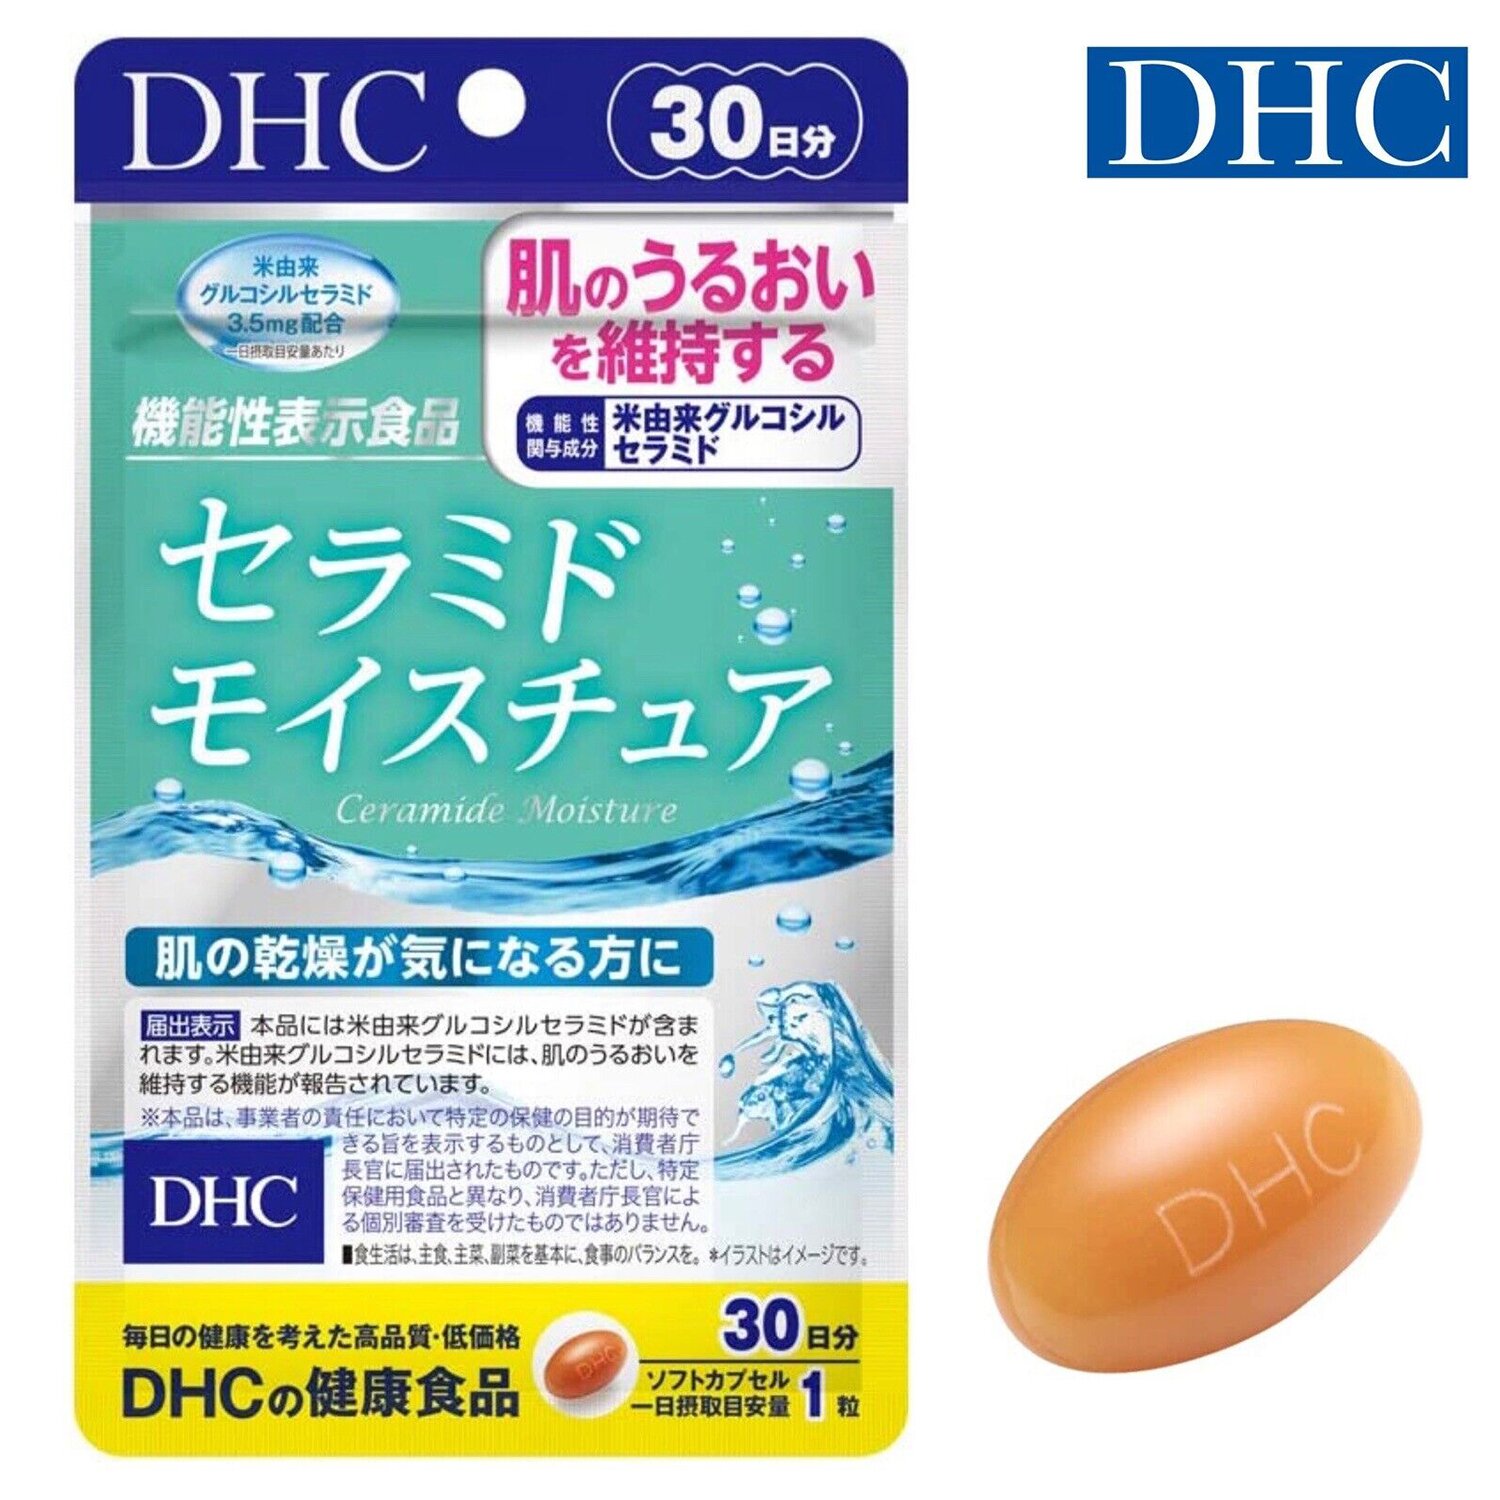 DHC DHC Ceramide Moisture 30 capsules